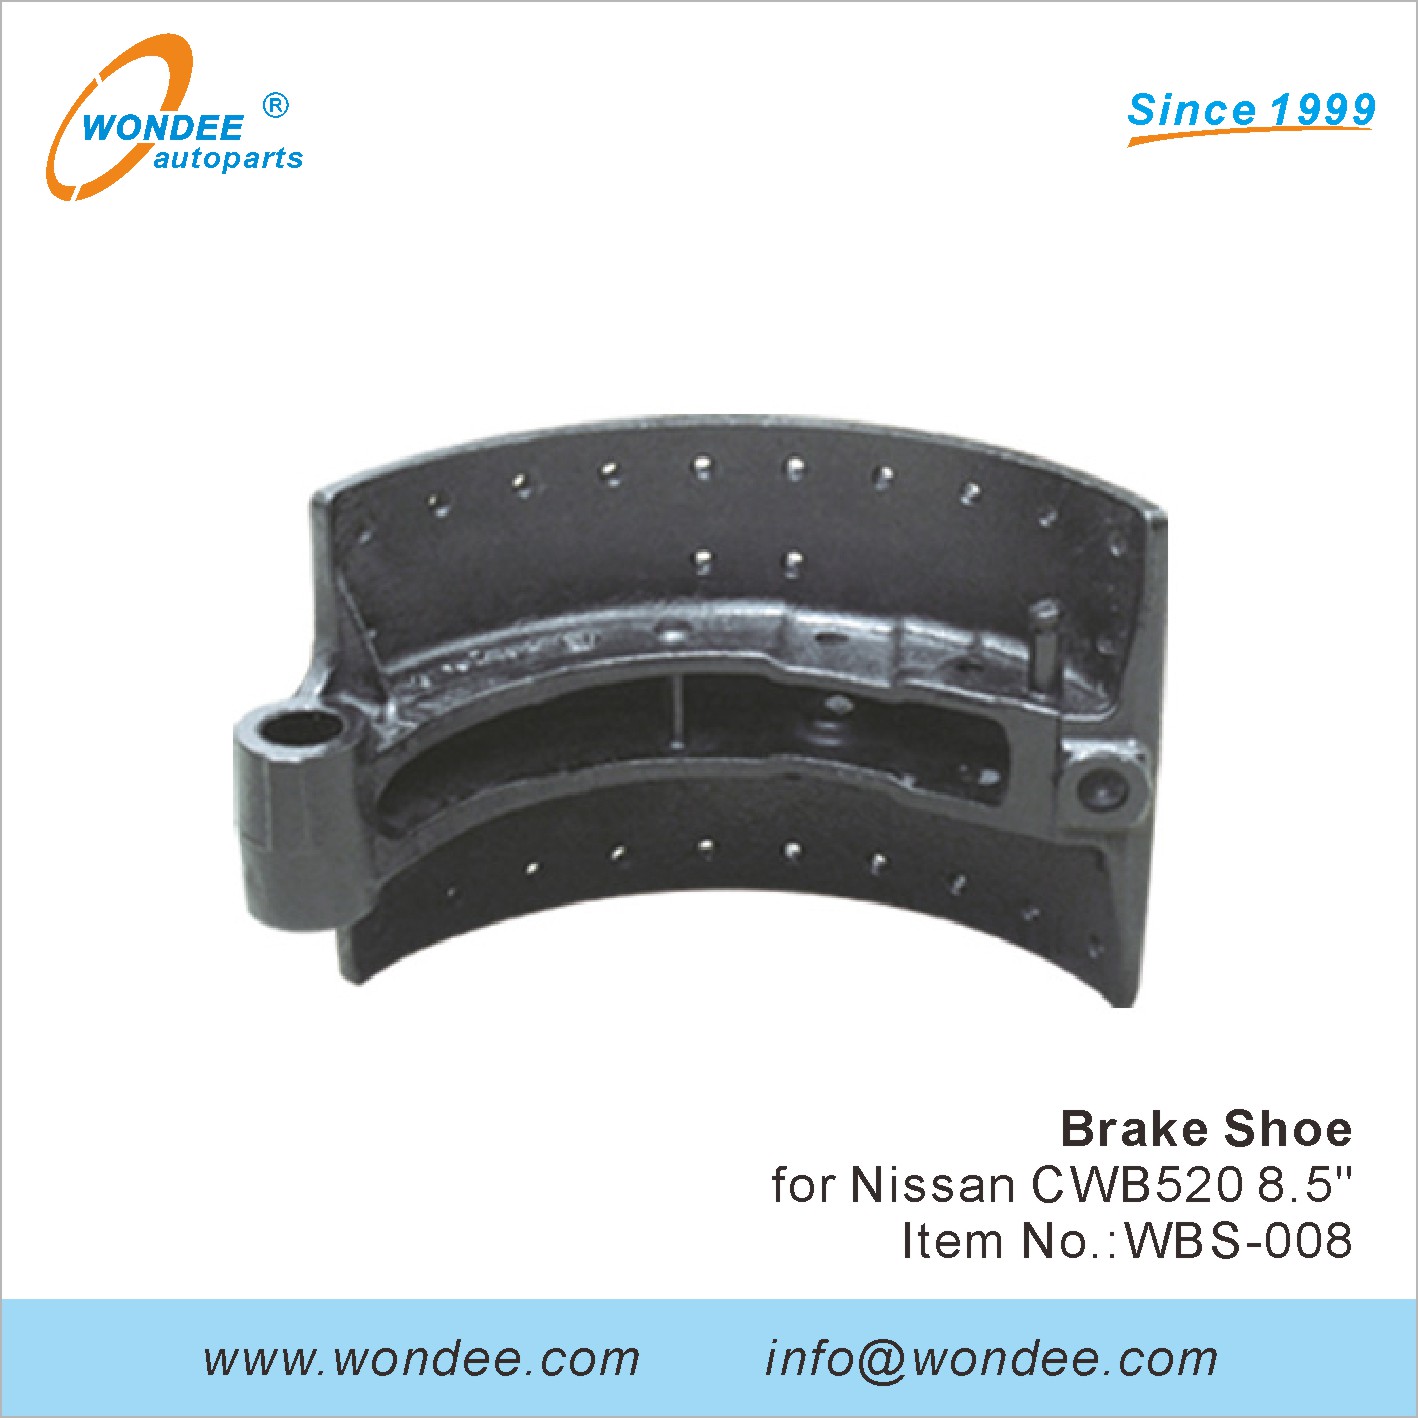 WONDEE brake shoe (8)